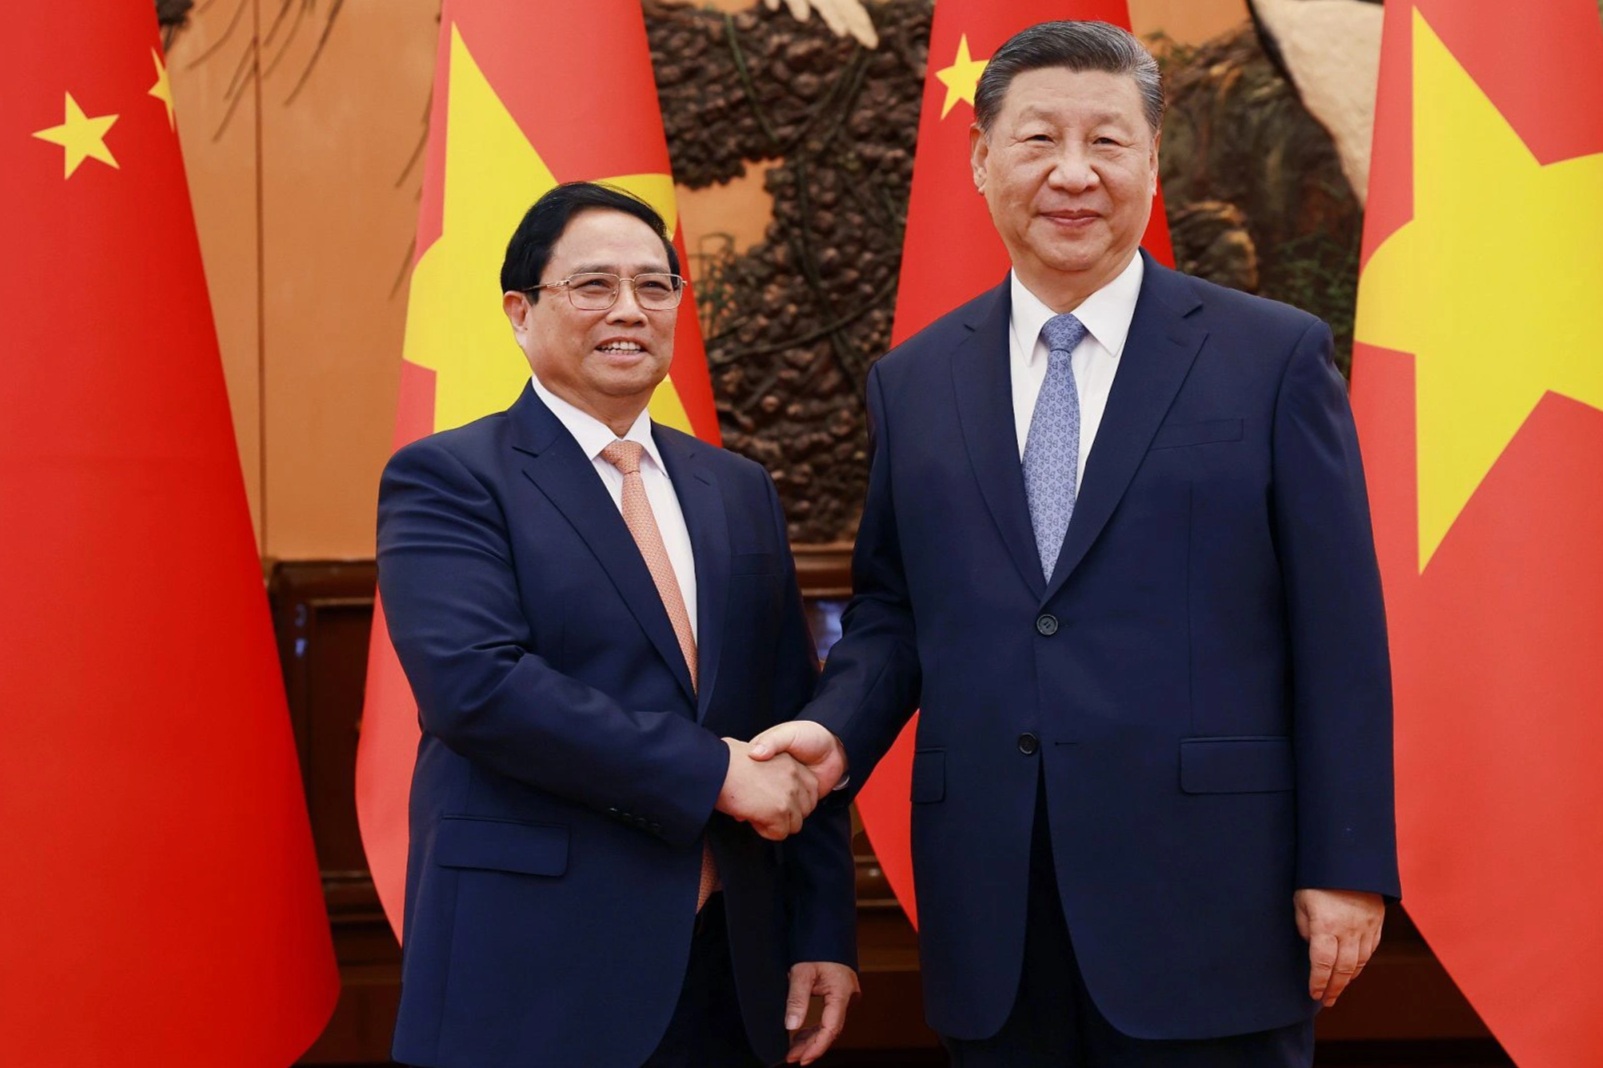 Điểm nhấn trong chuyến công tác Trung Quốc của Thủ tướng Phạm Minh Chính - 3